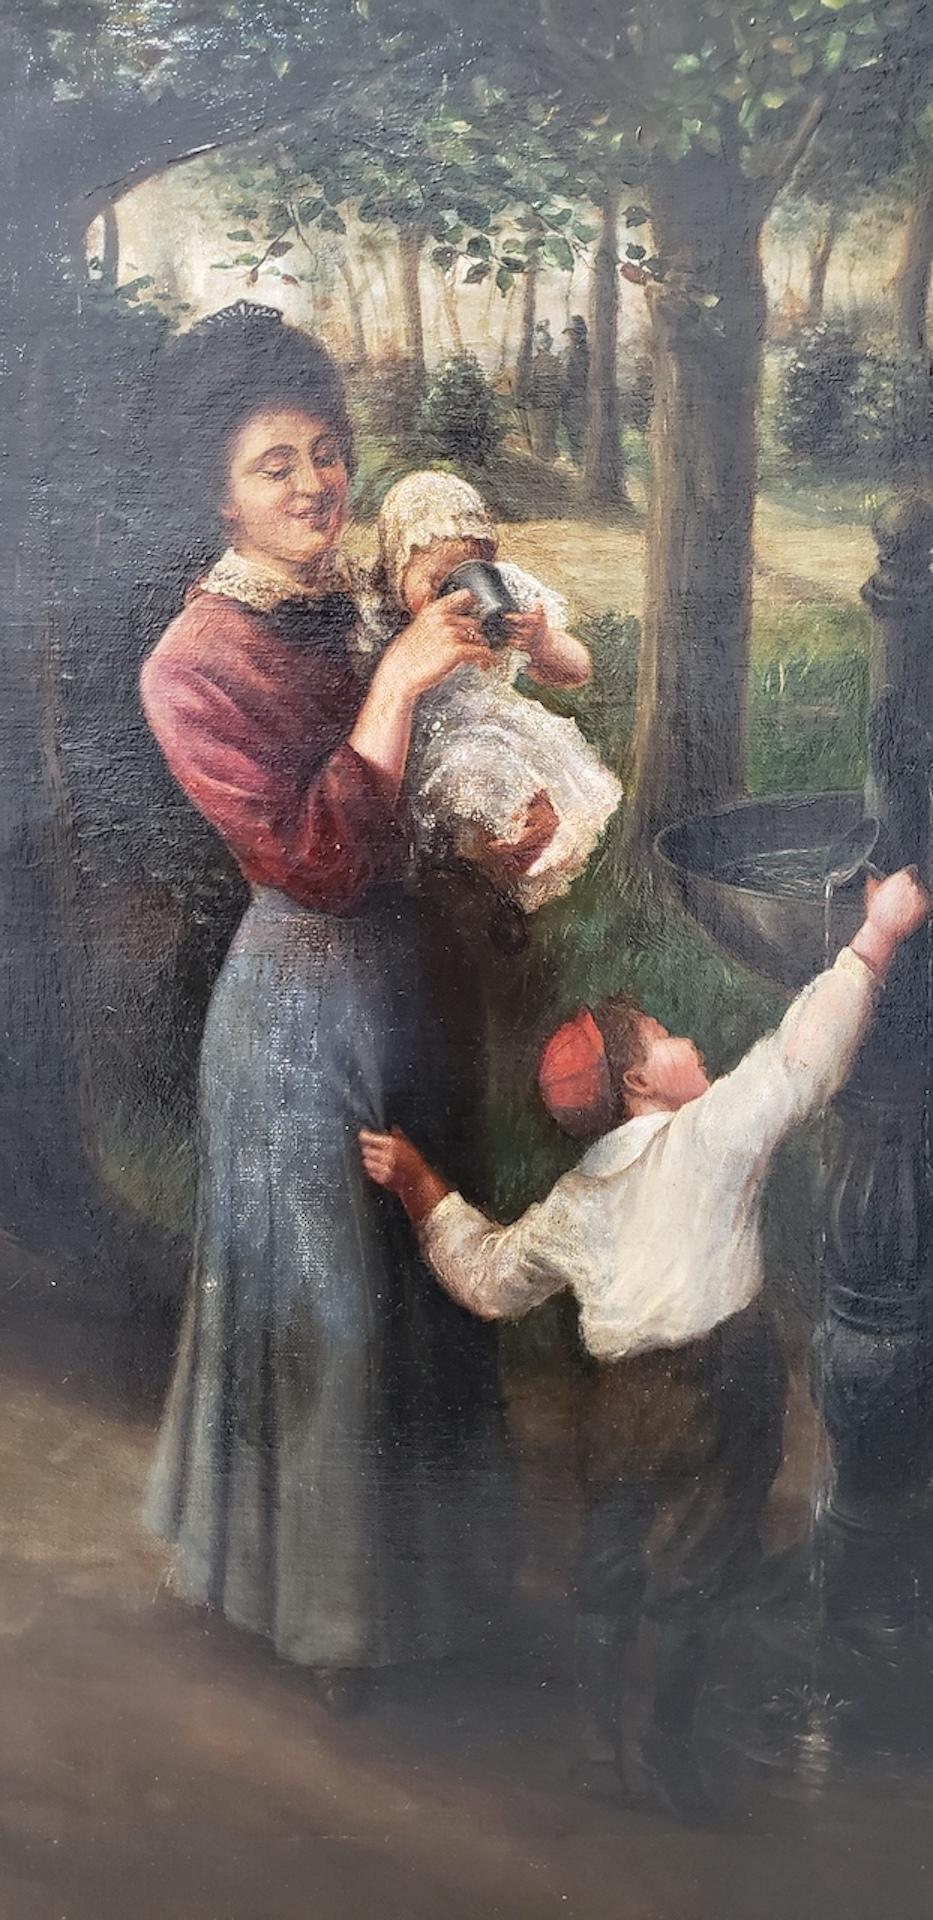 Peinture à l'huile de la fin du 19e siècle représentant une jeune famille dans un parc

Belle peinture à l'huile ancienne représentant une jeune famille buvant de l'eau à une fontaine dans un parc.

Huile originale sur toile. Dimensions : 20